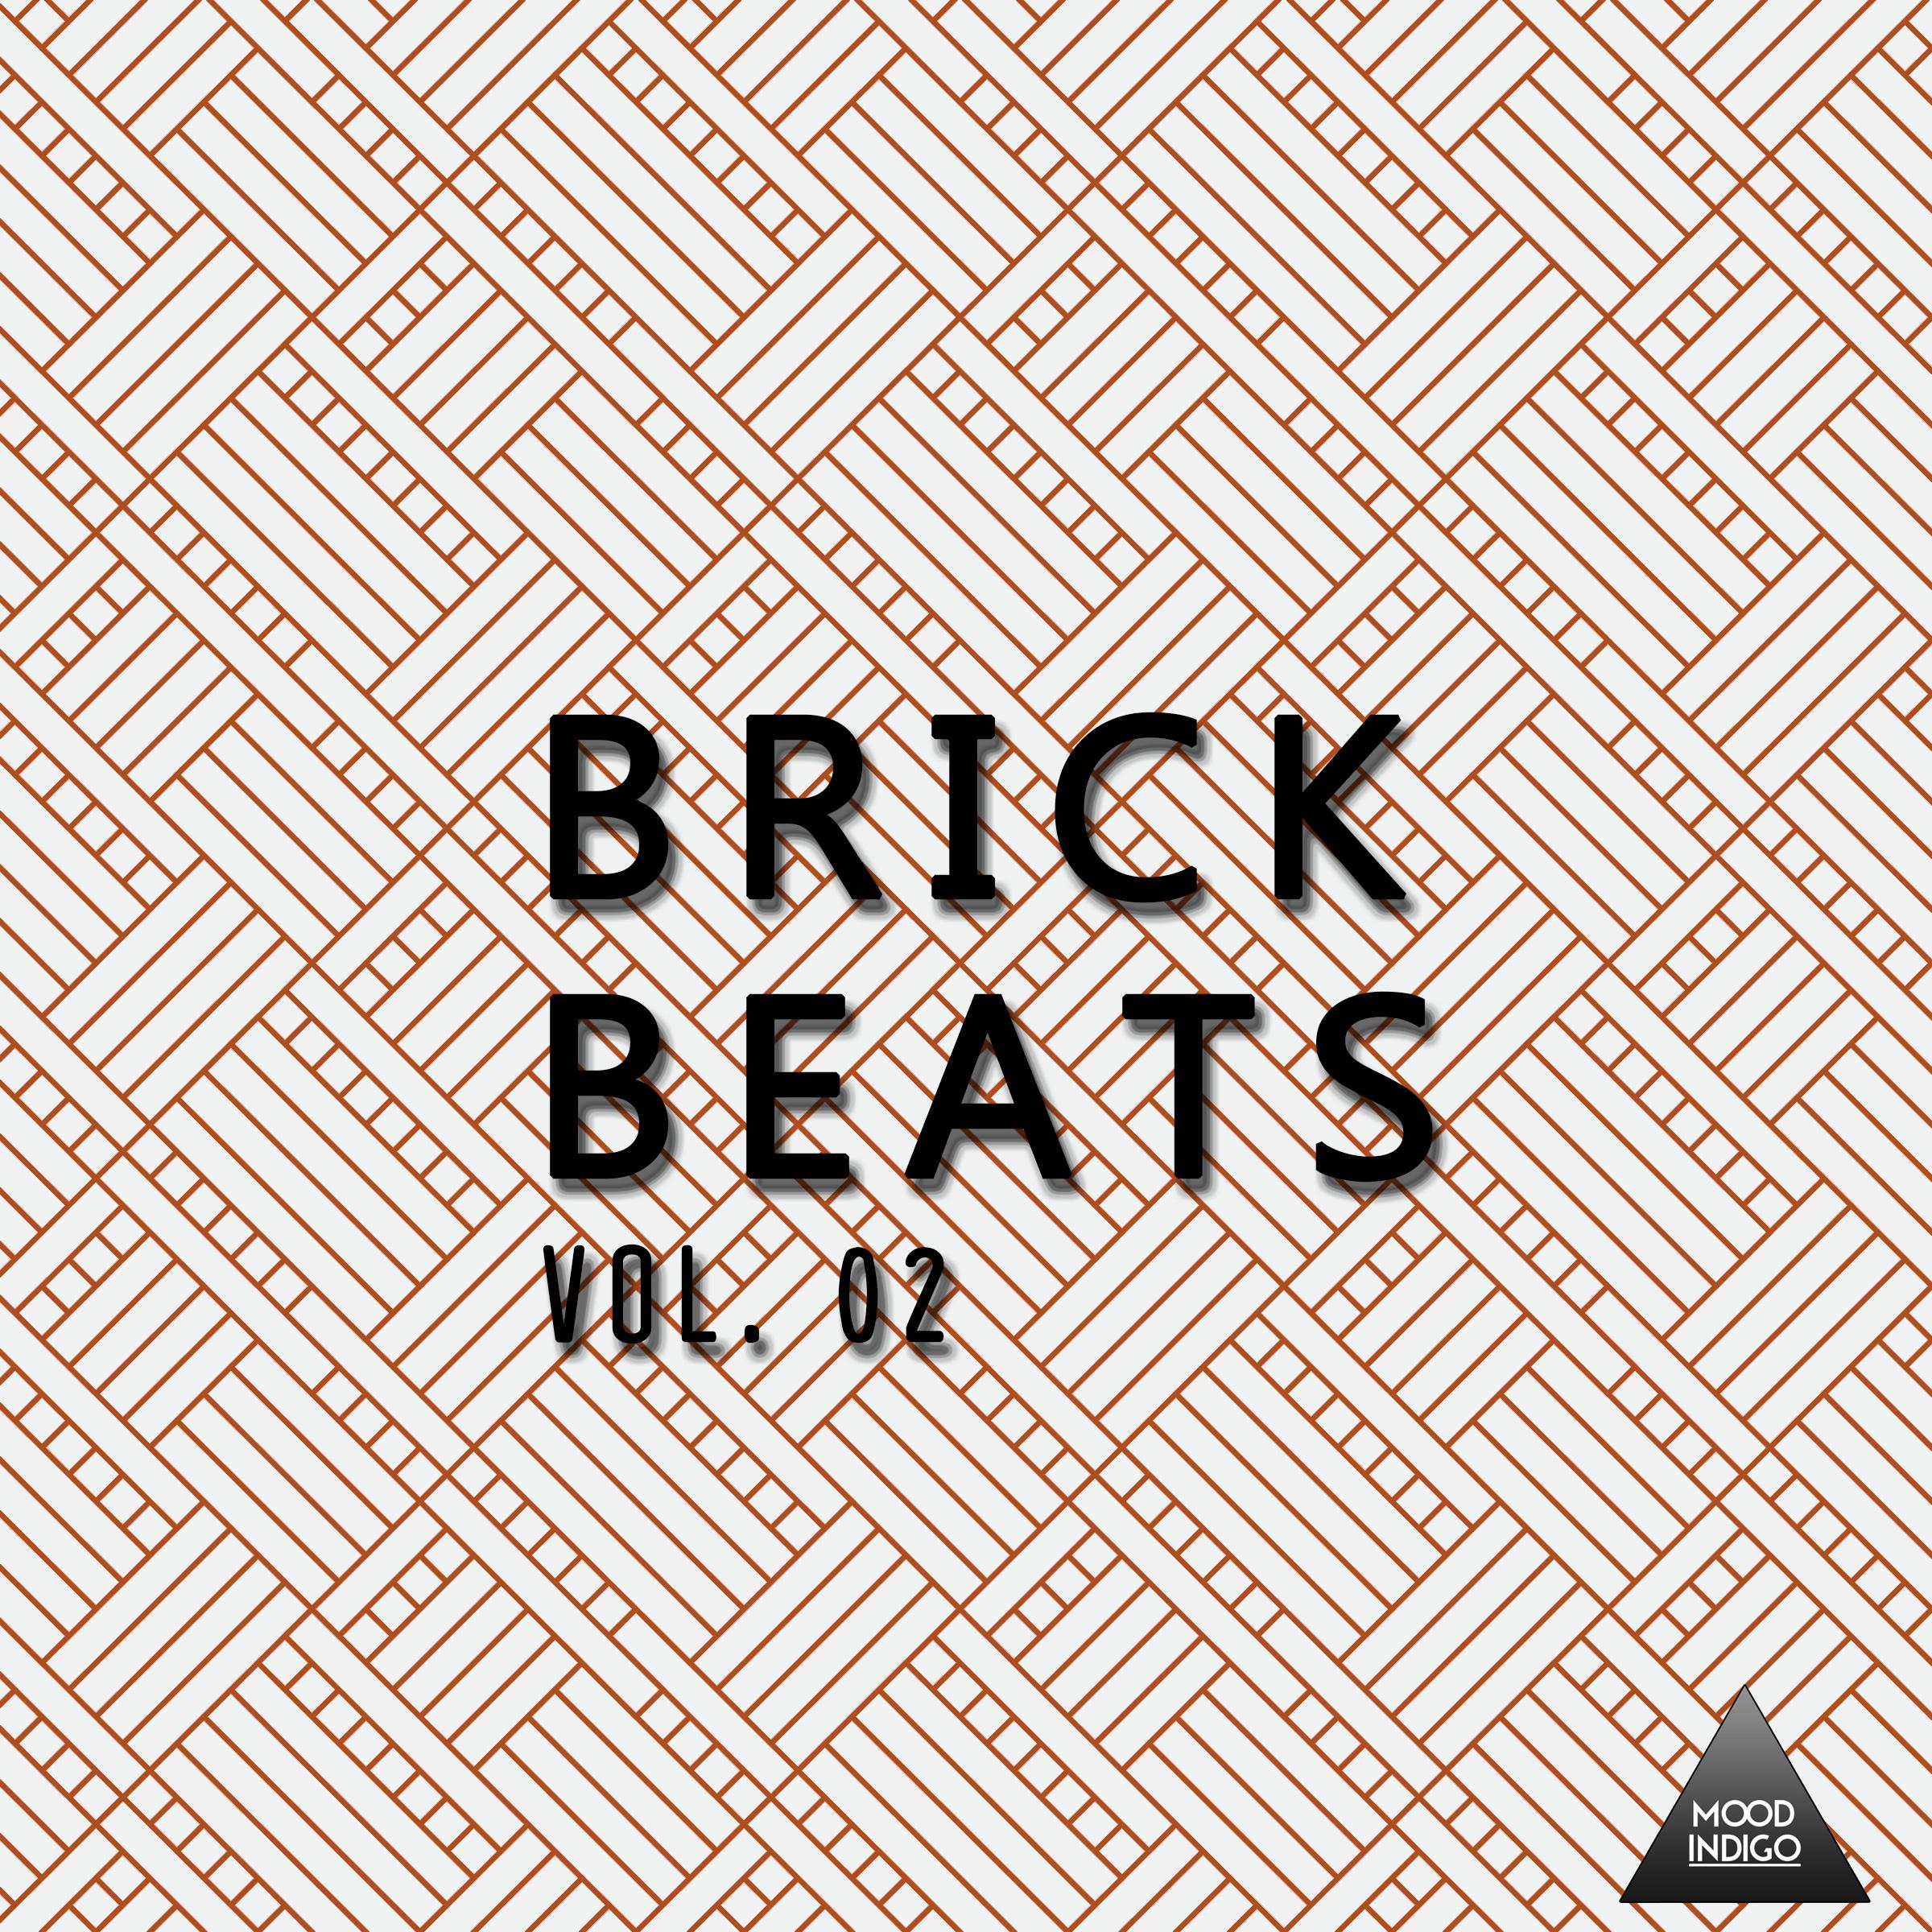 Brick Beats, Vol. 02